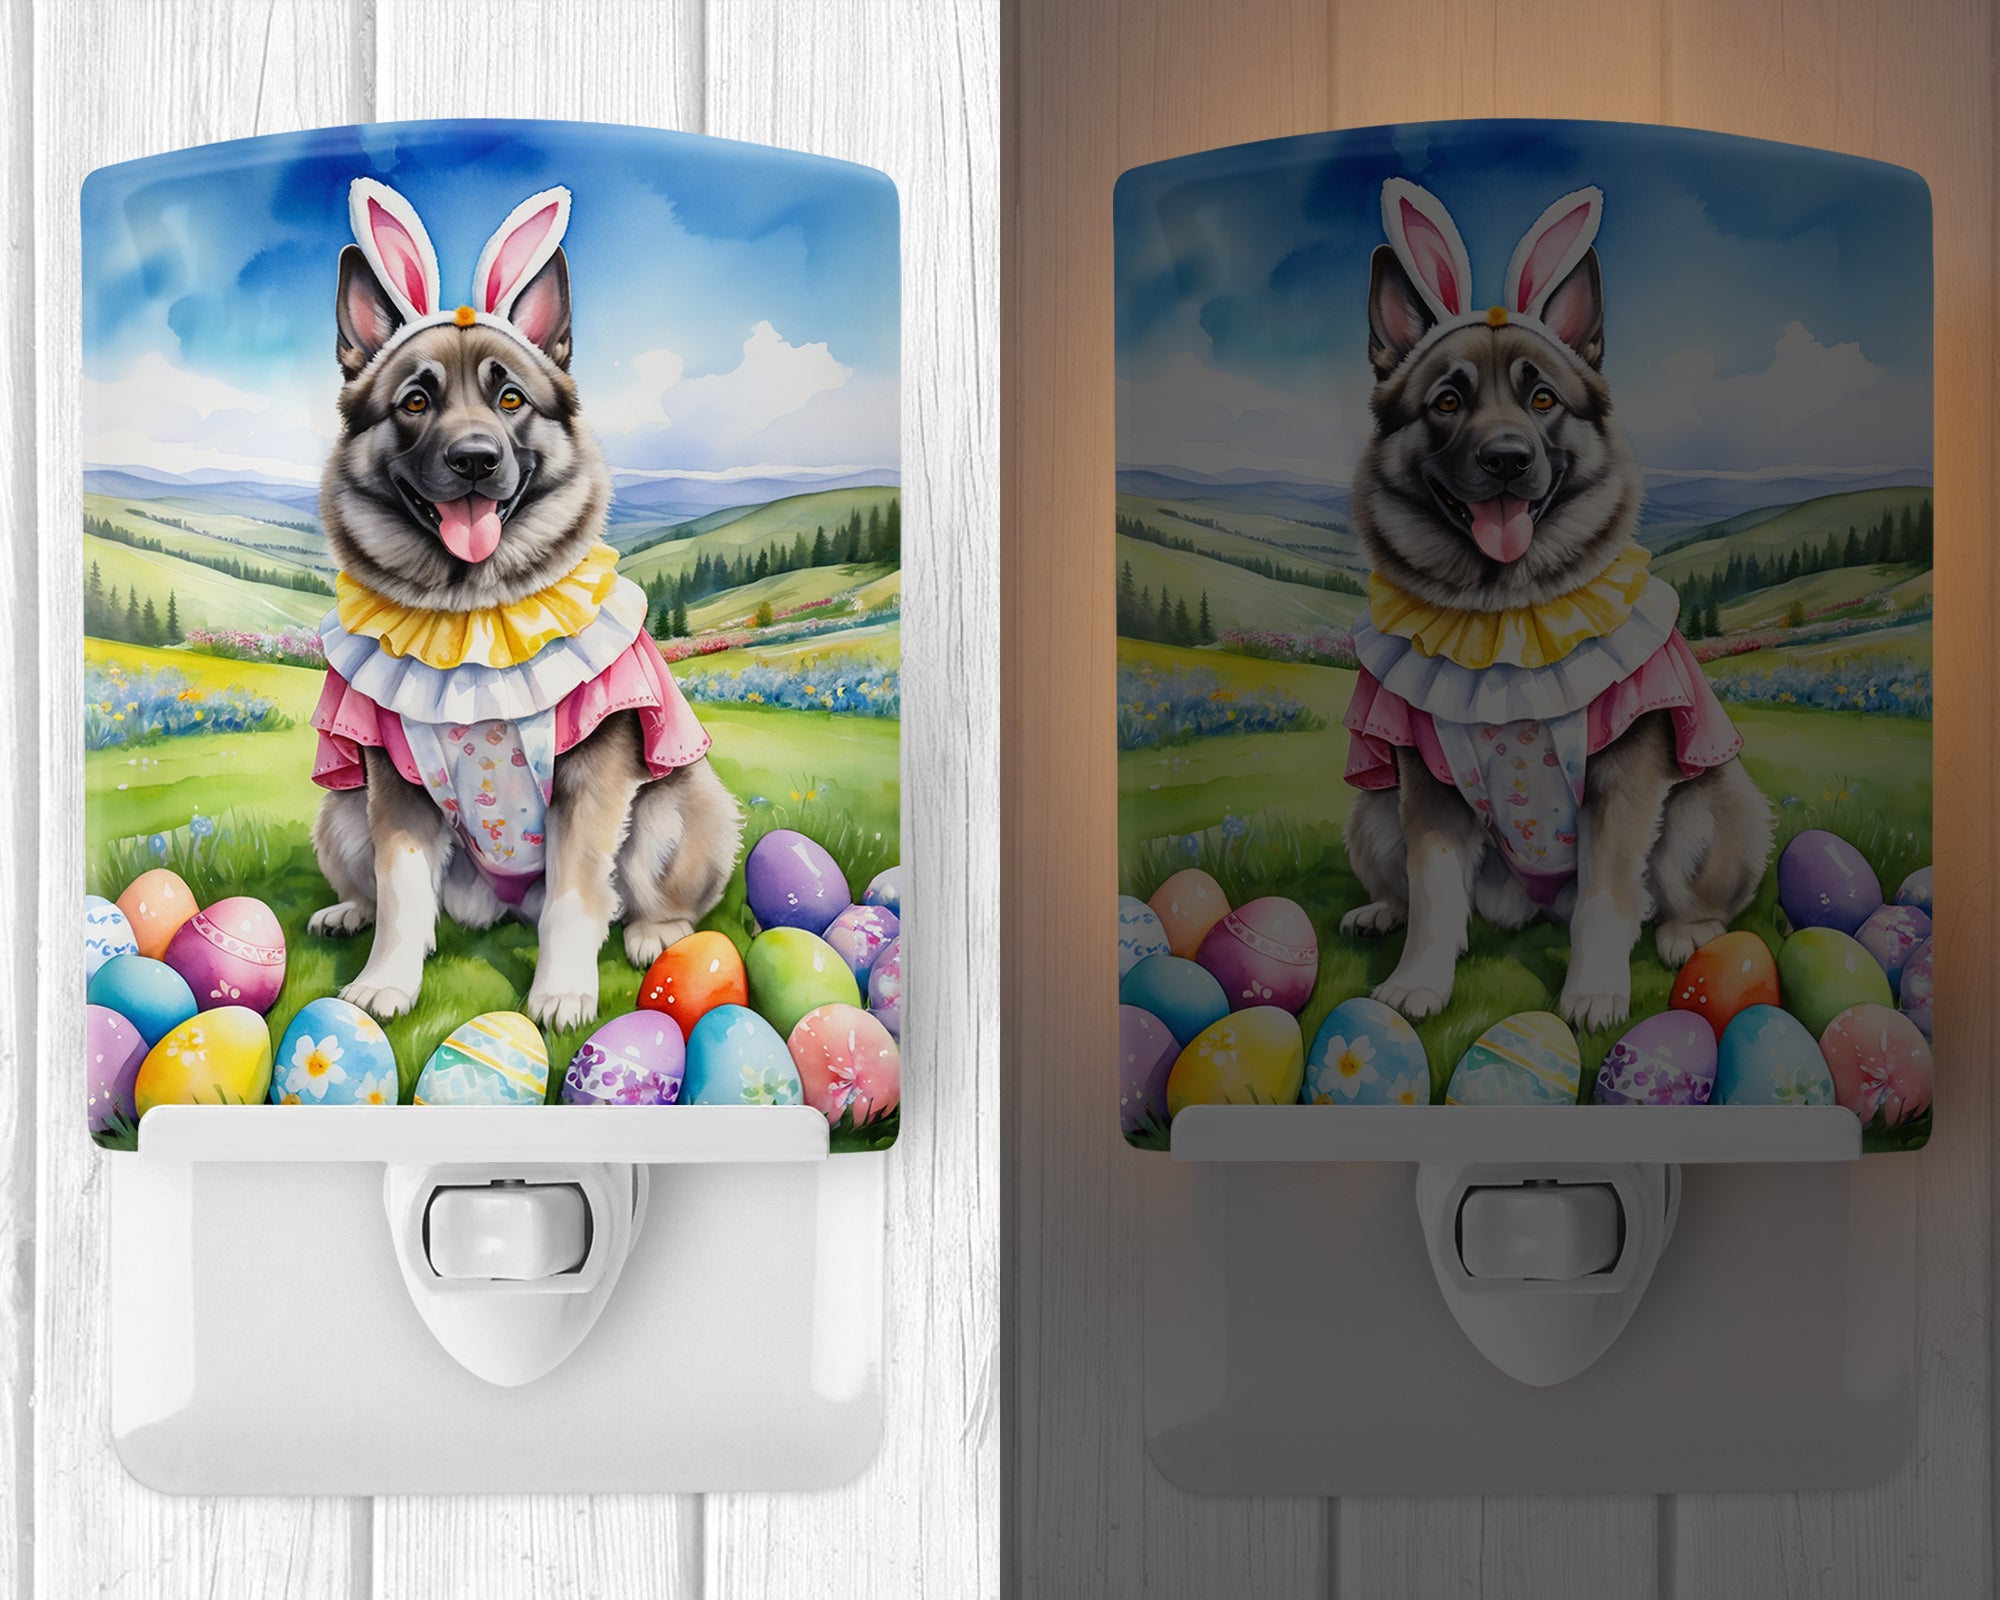 Buy this Norwegian Elkhound Easter Egg Hunt Ceramic Night Light